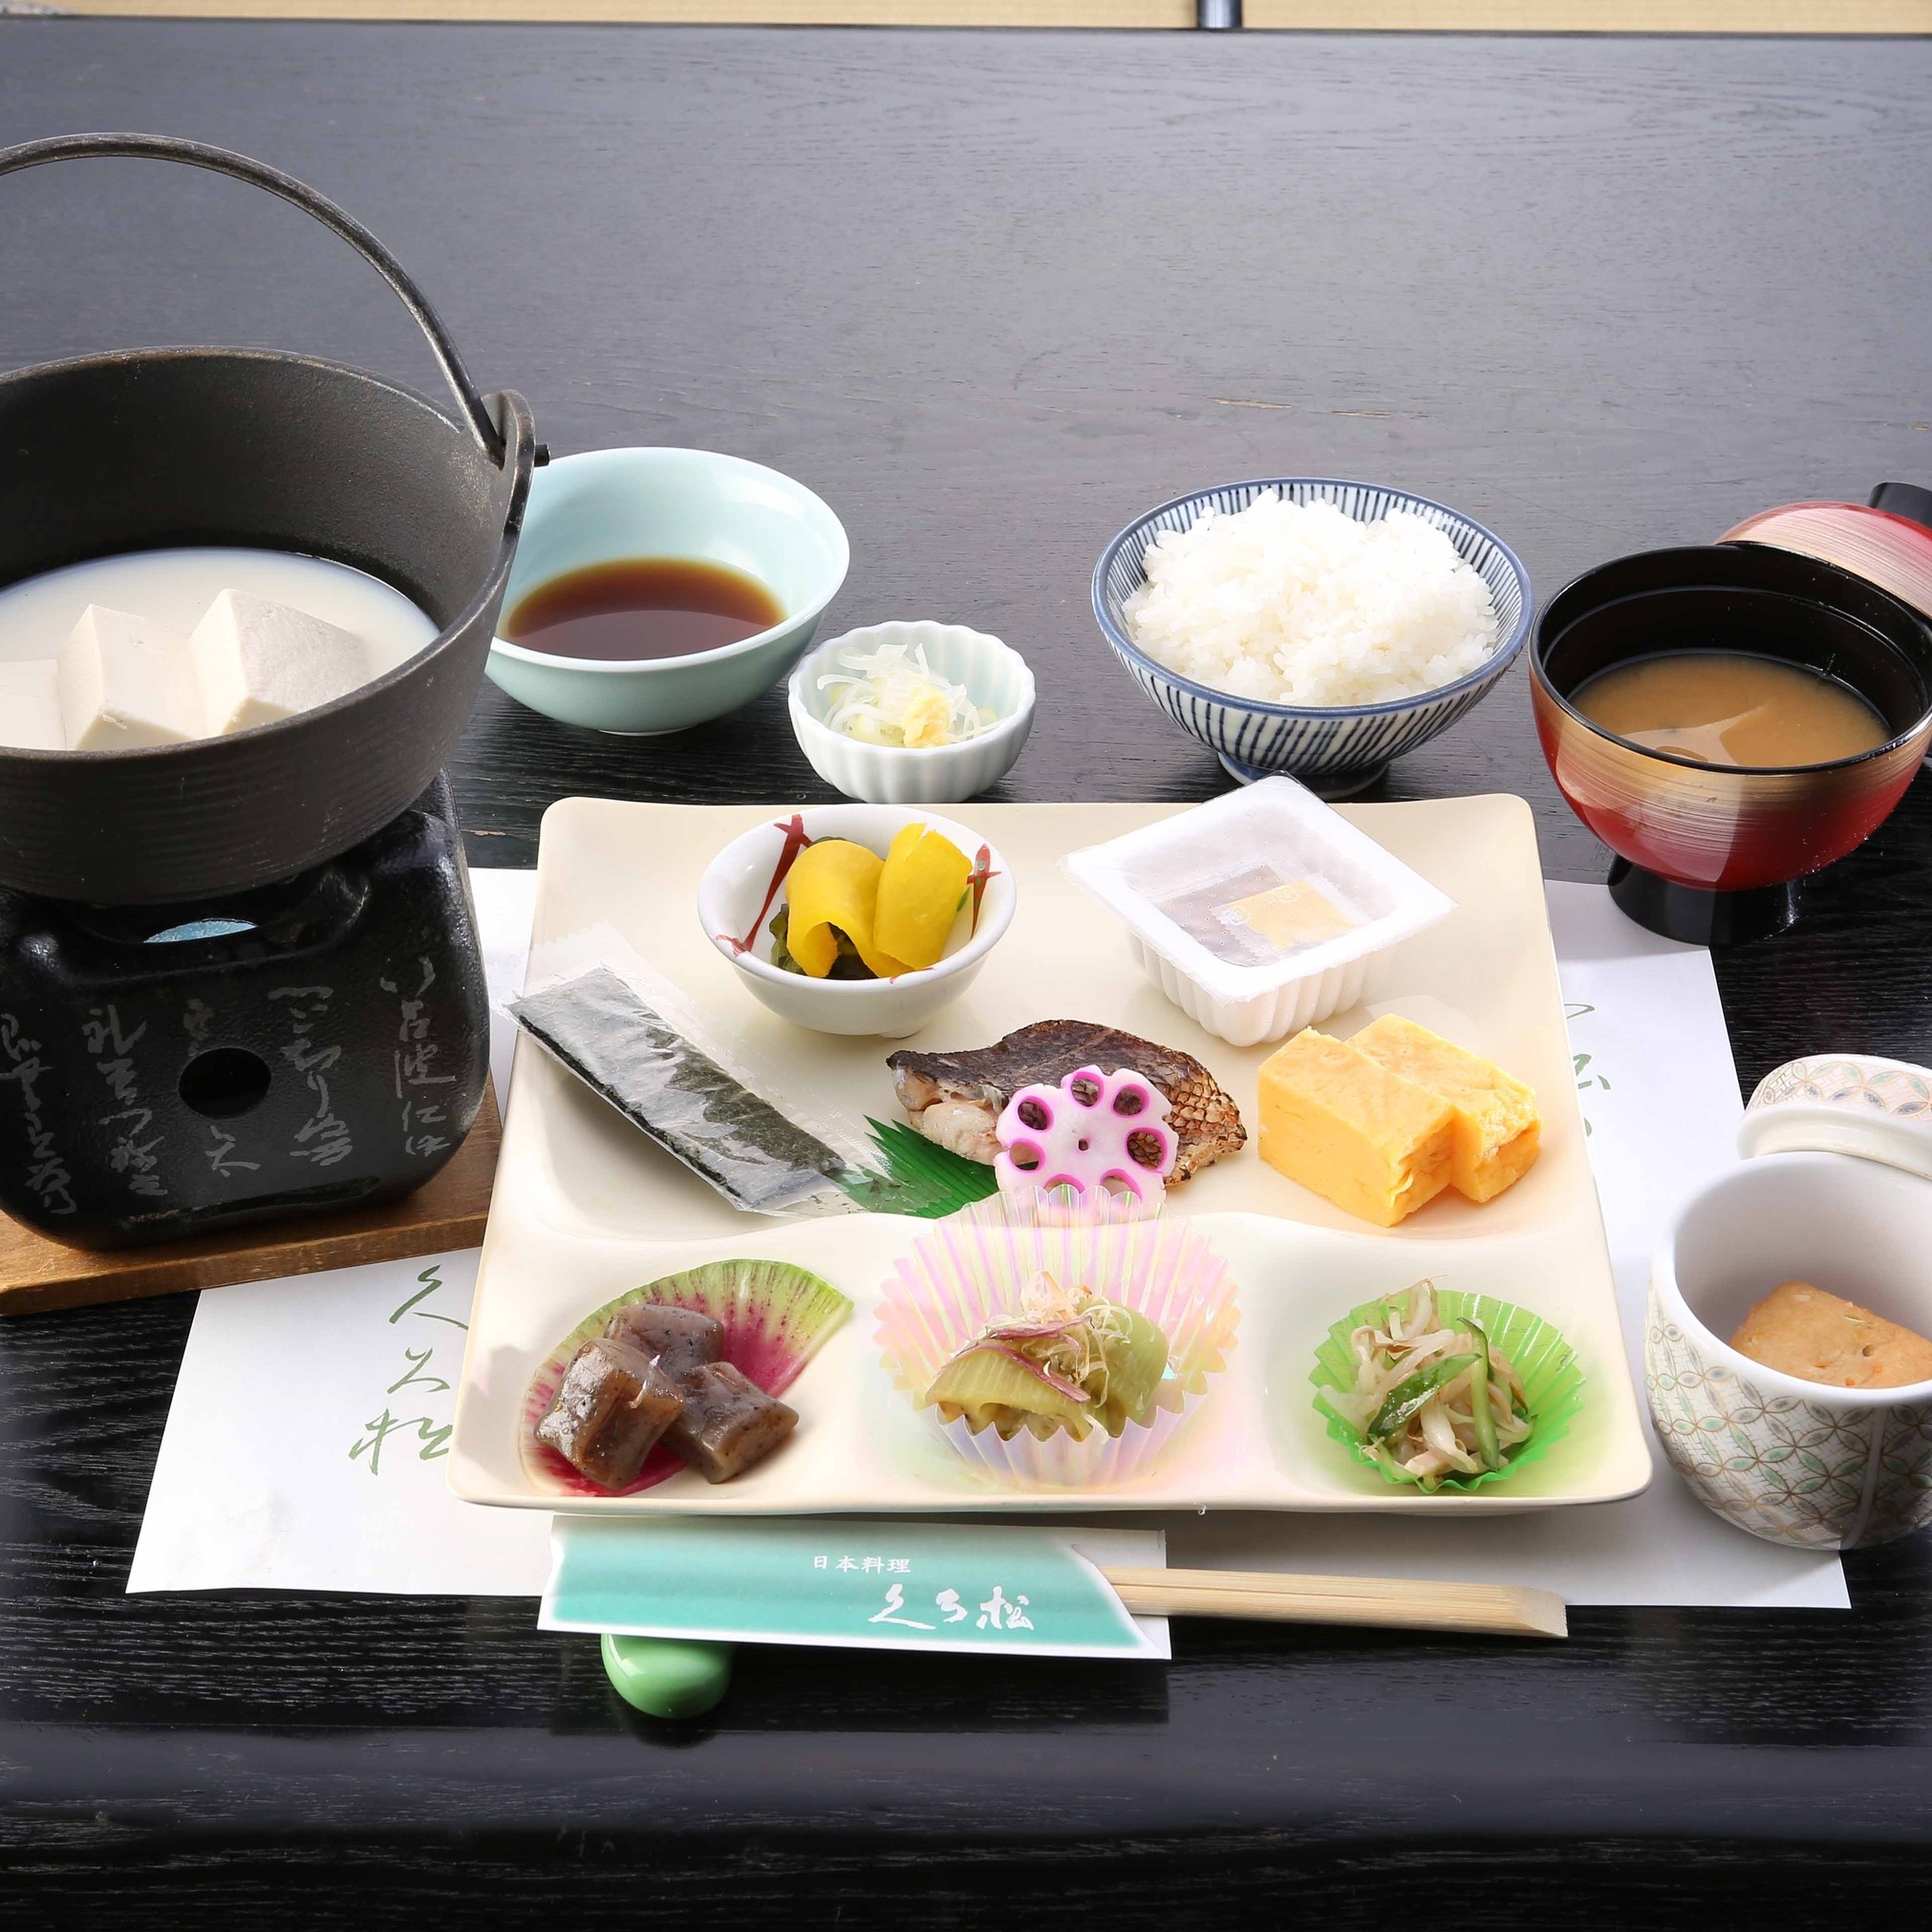 【2食付き】日本料理と上州麦豚を味わうおすすめコース